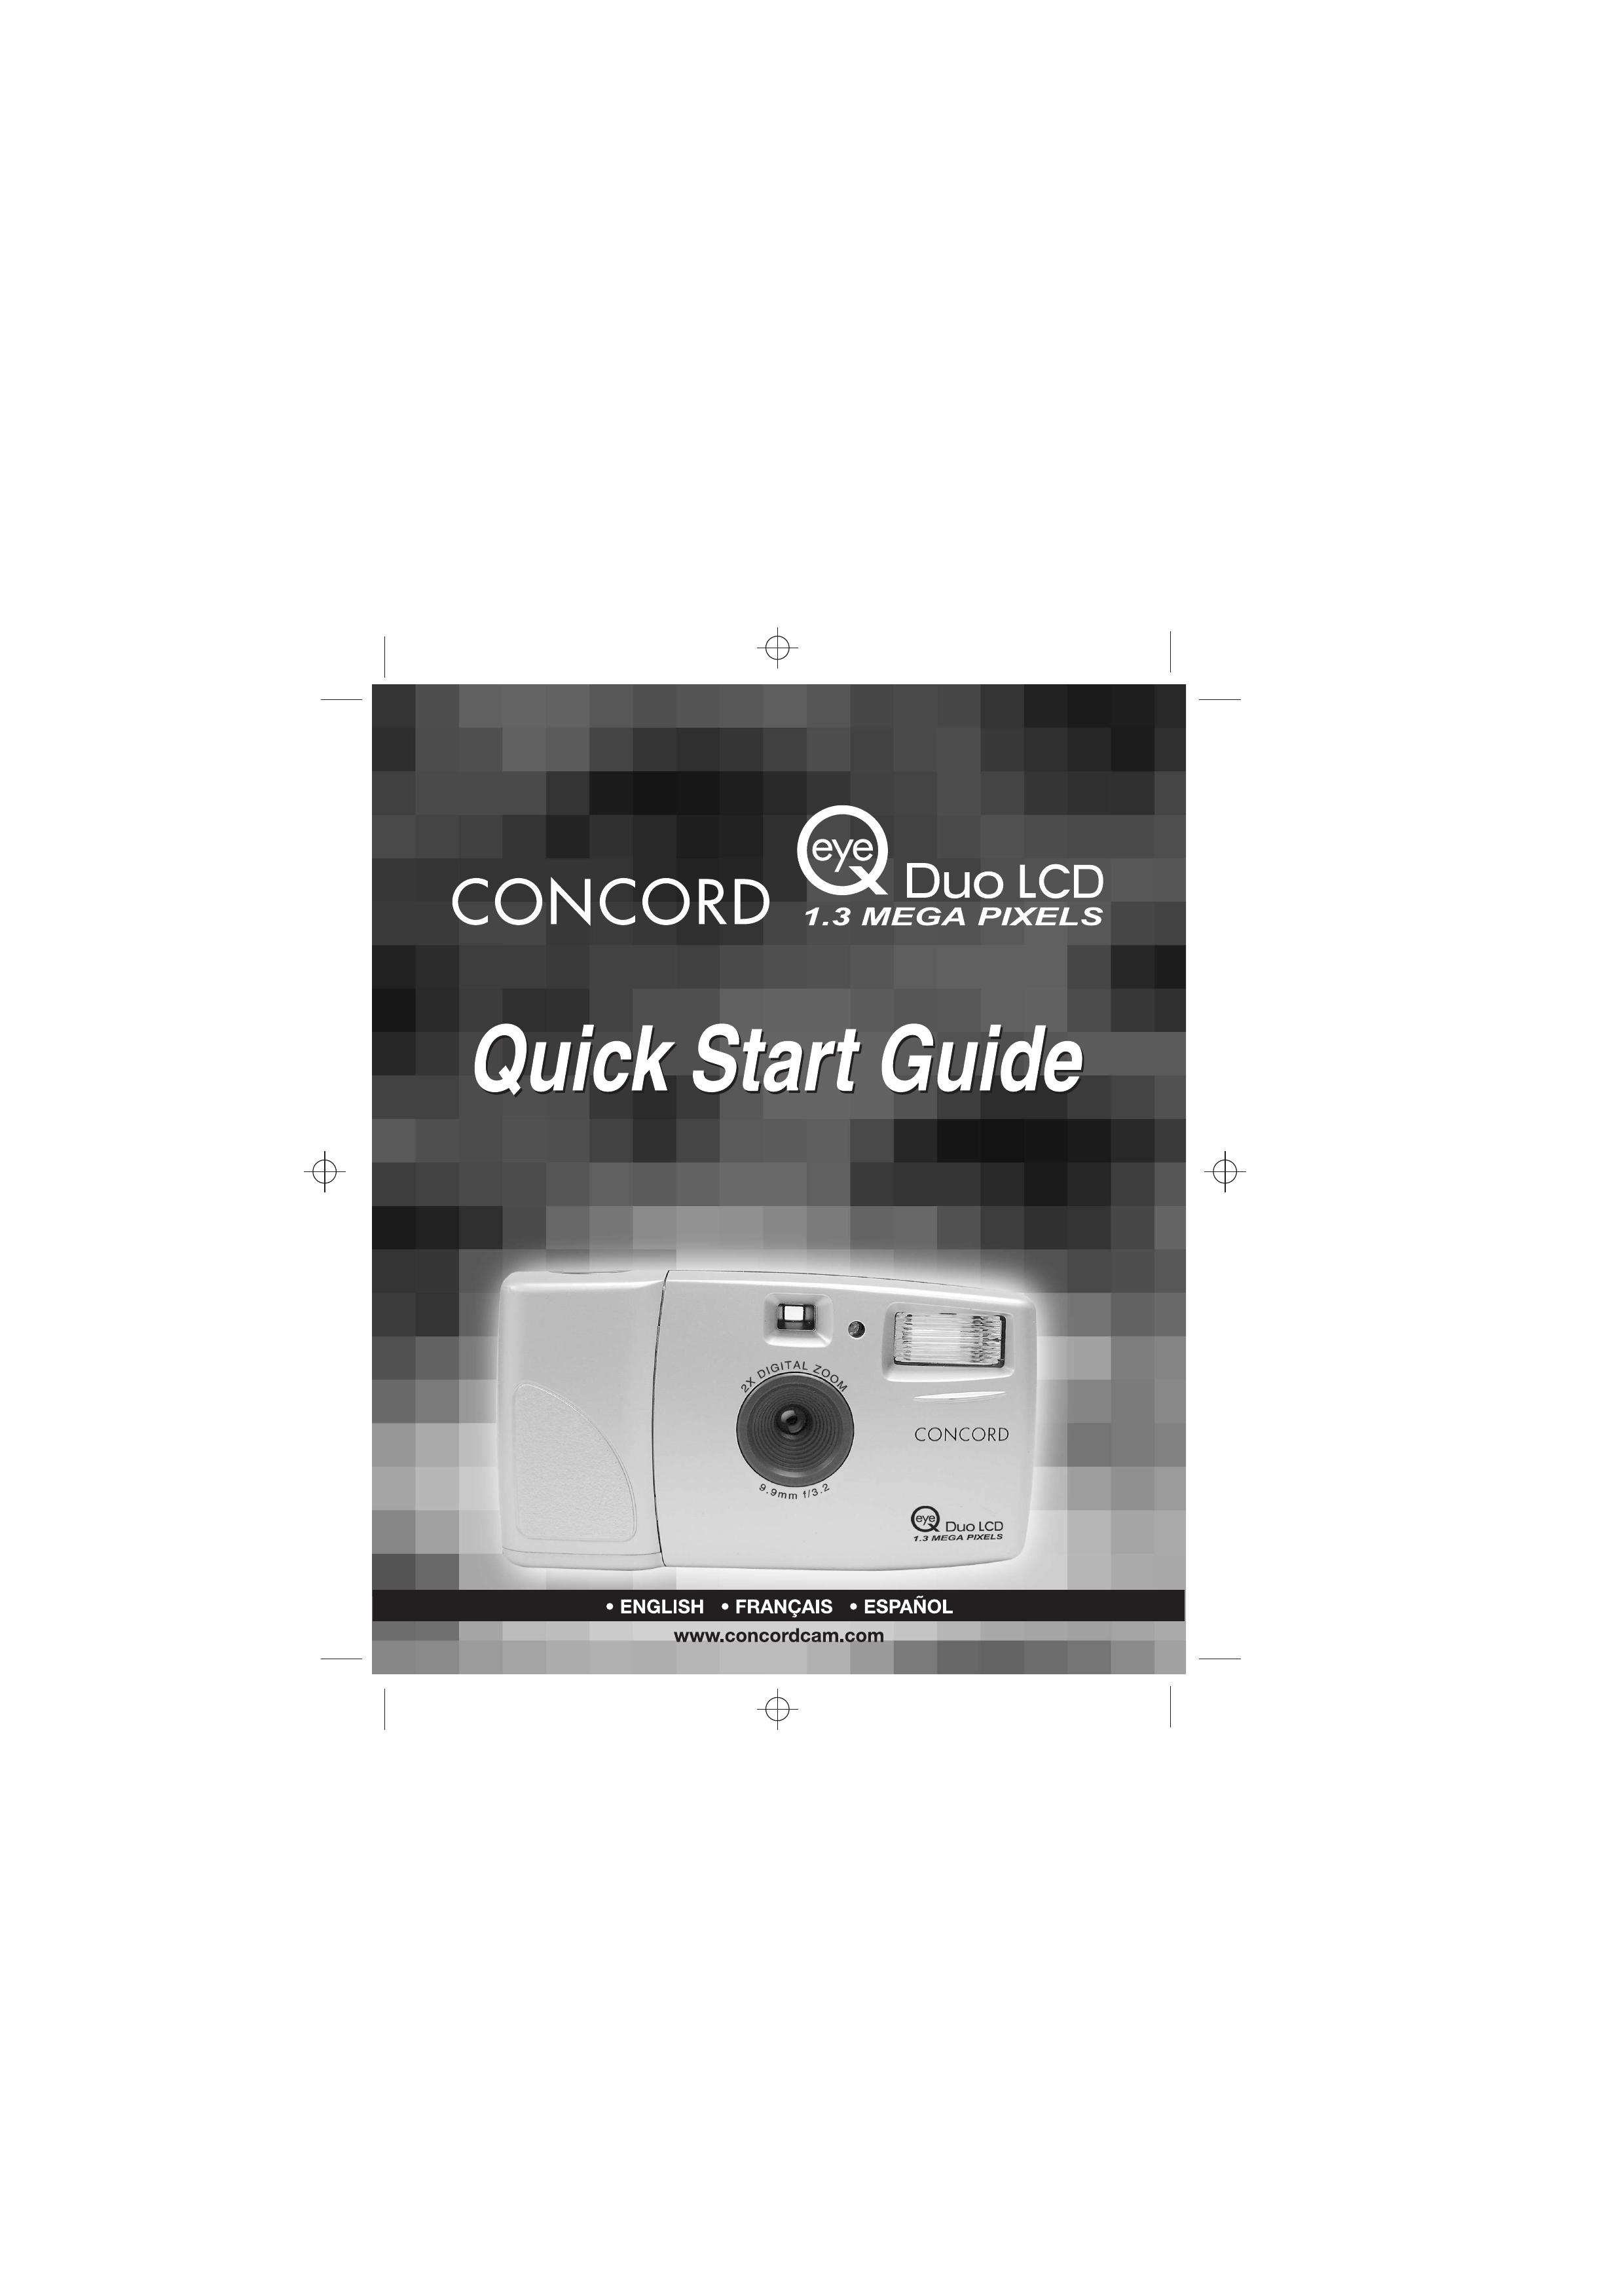 Concord Camera 1.3 Mega Pixels Camera Digital Camera User Manual